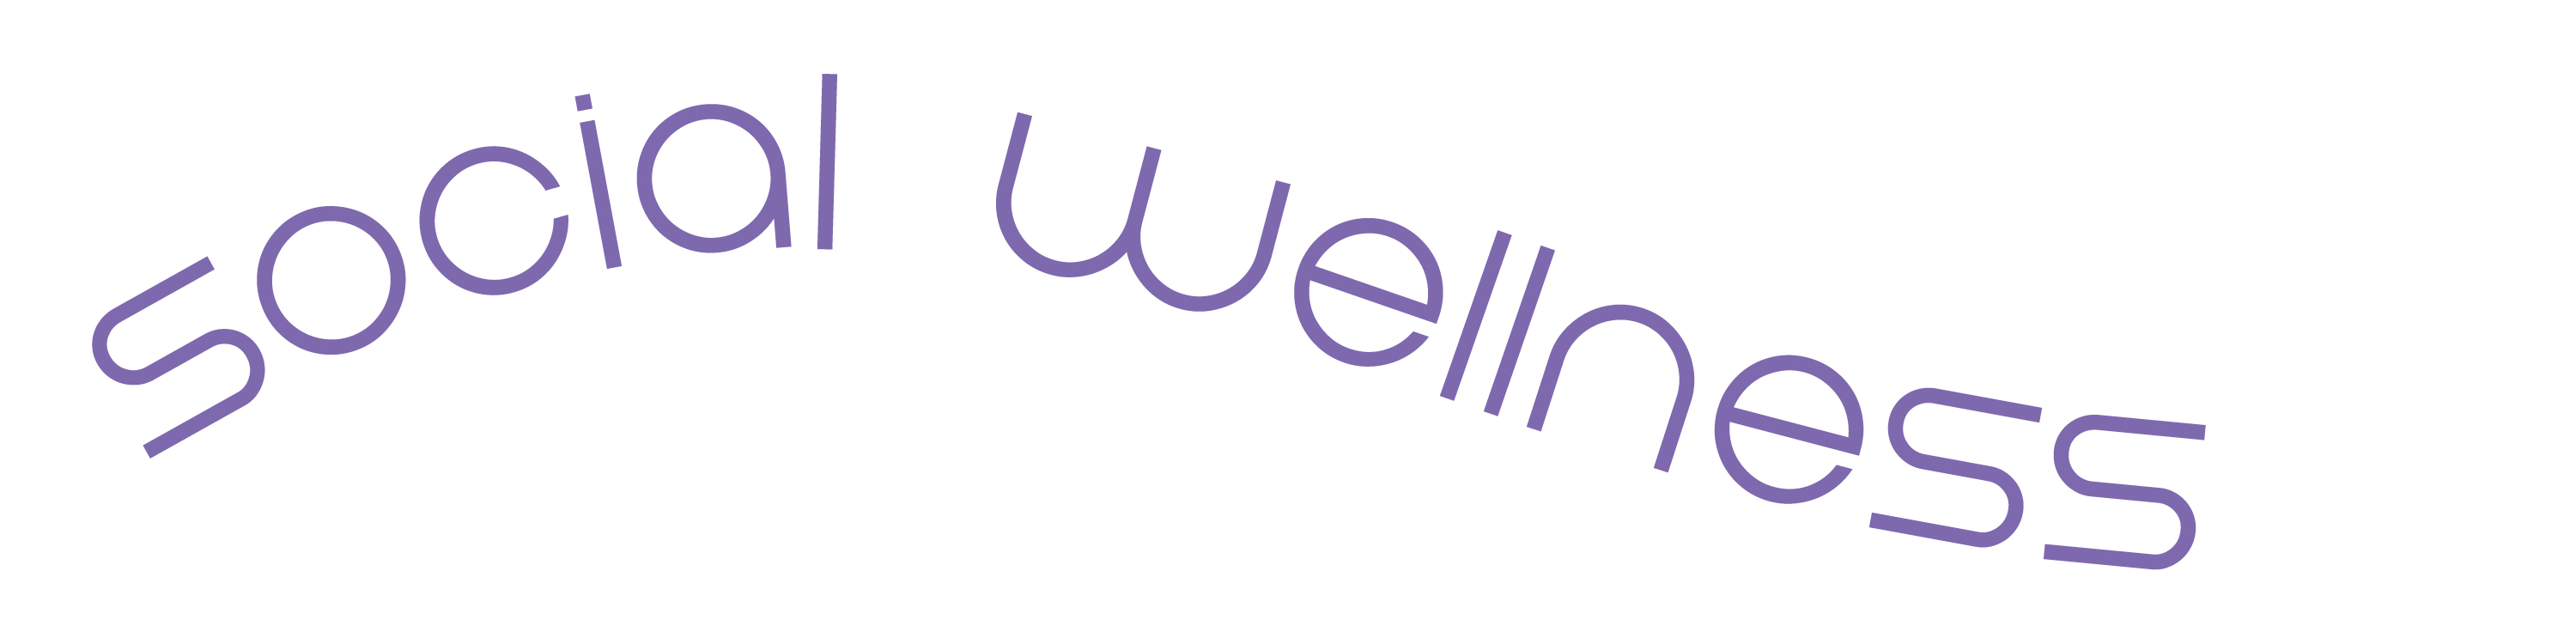 Social Wellness text banner